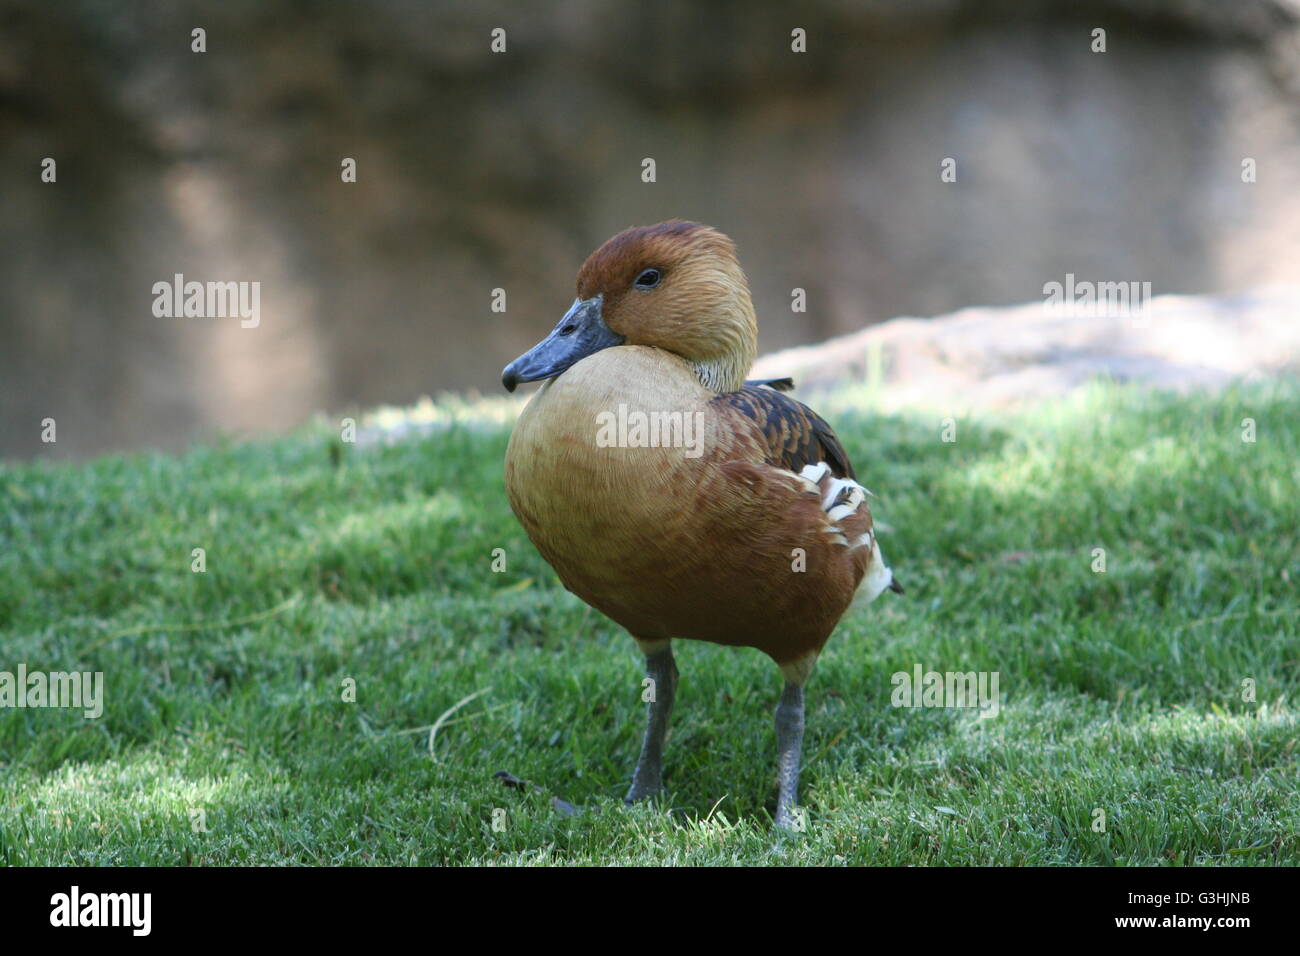 Eine kleine Ente Stand auf dem Rasen Stockfoto